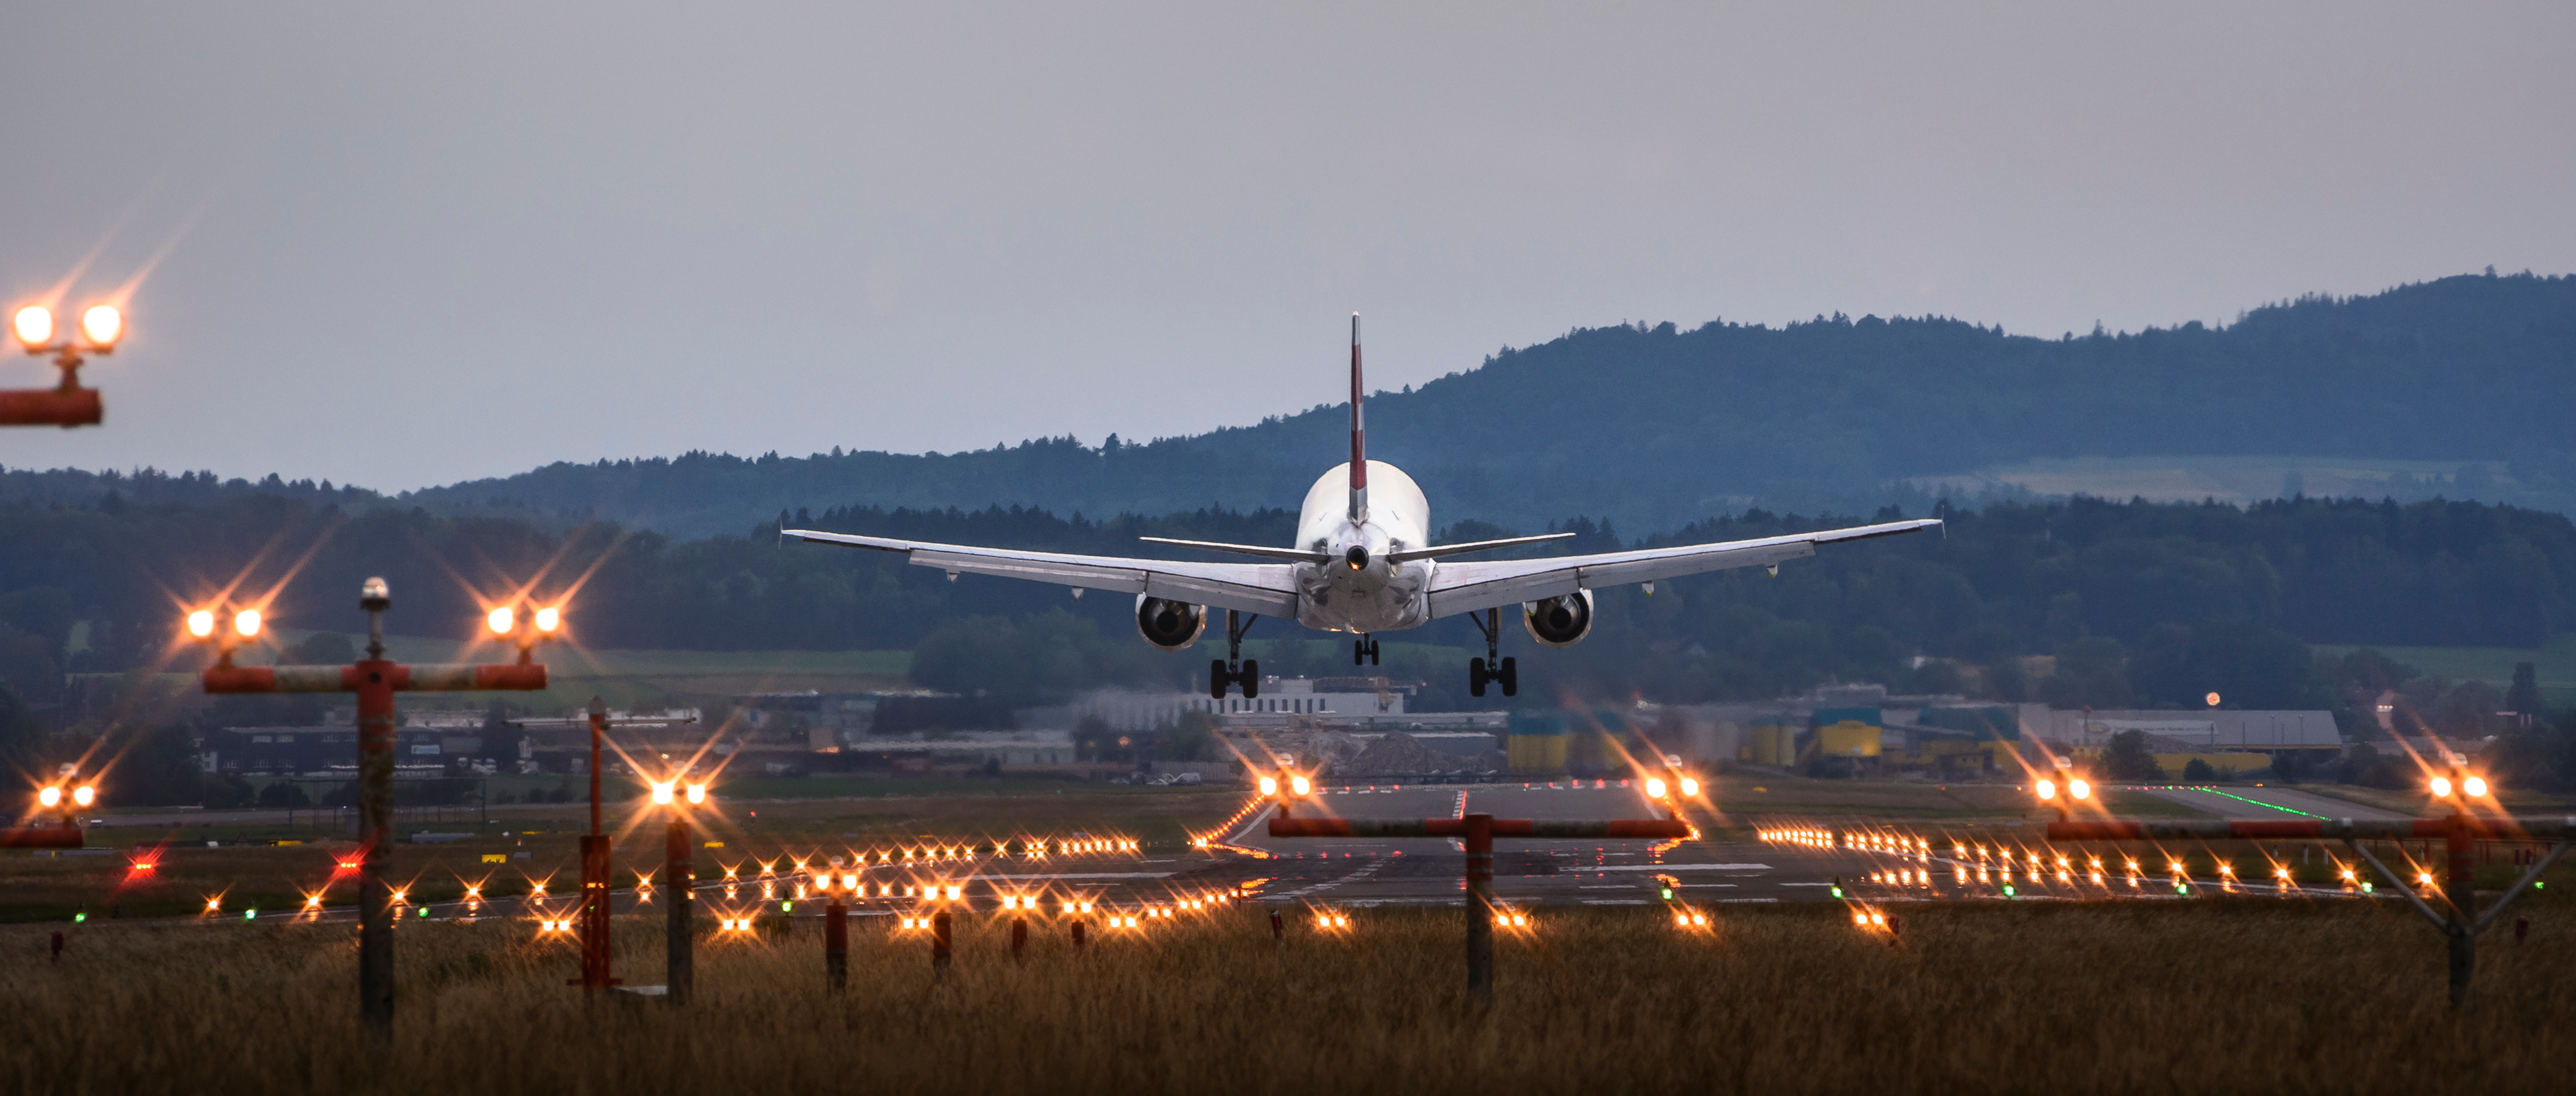 An aircraft approaching a runway for landing.